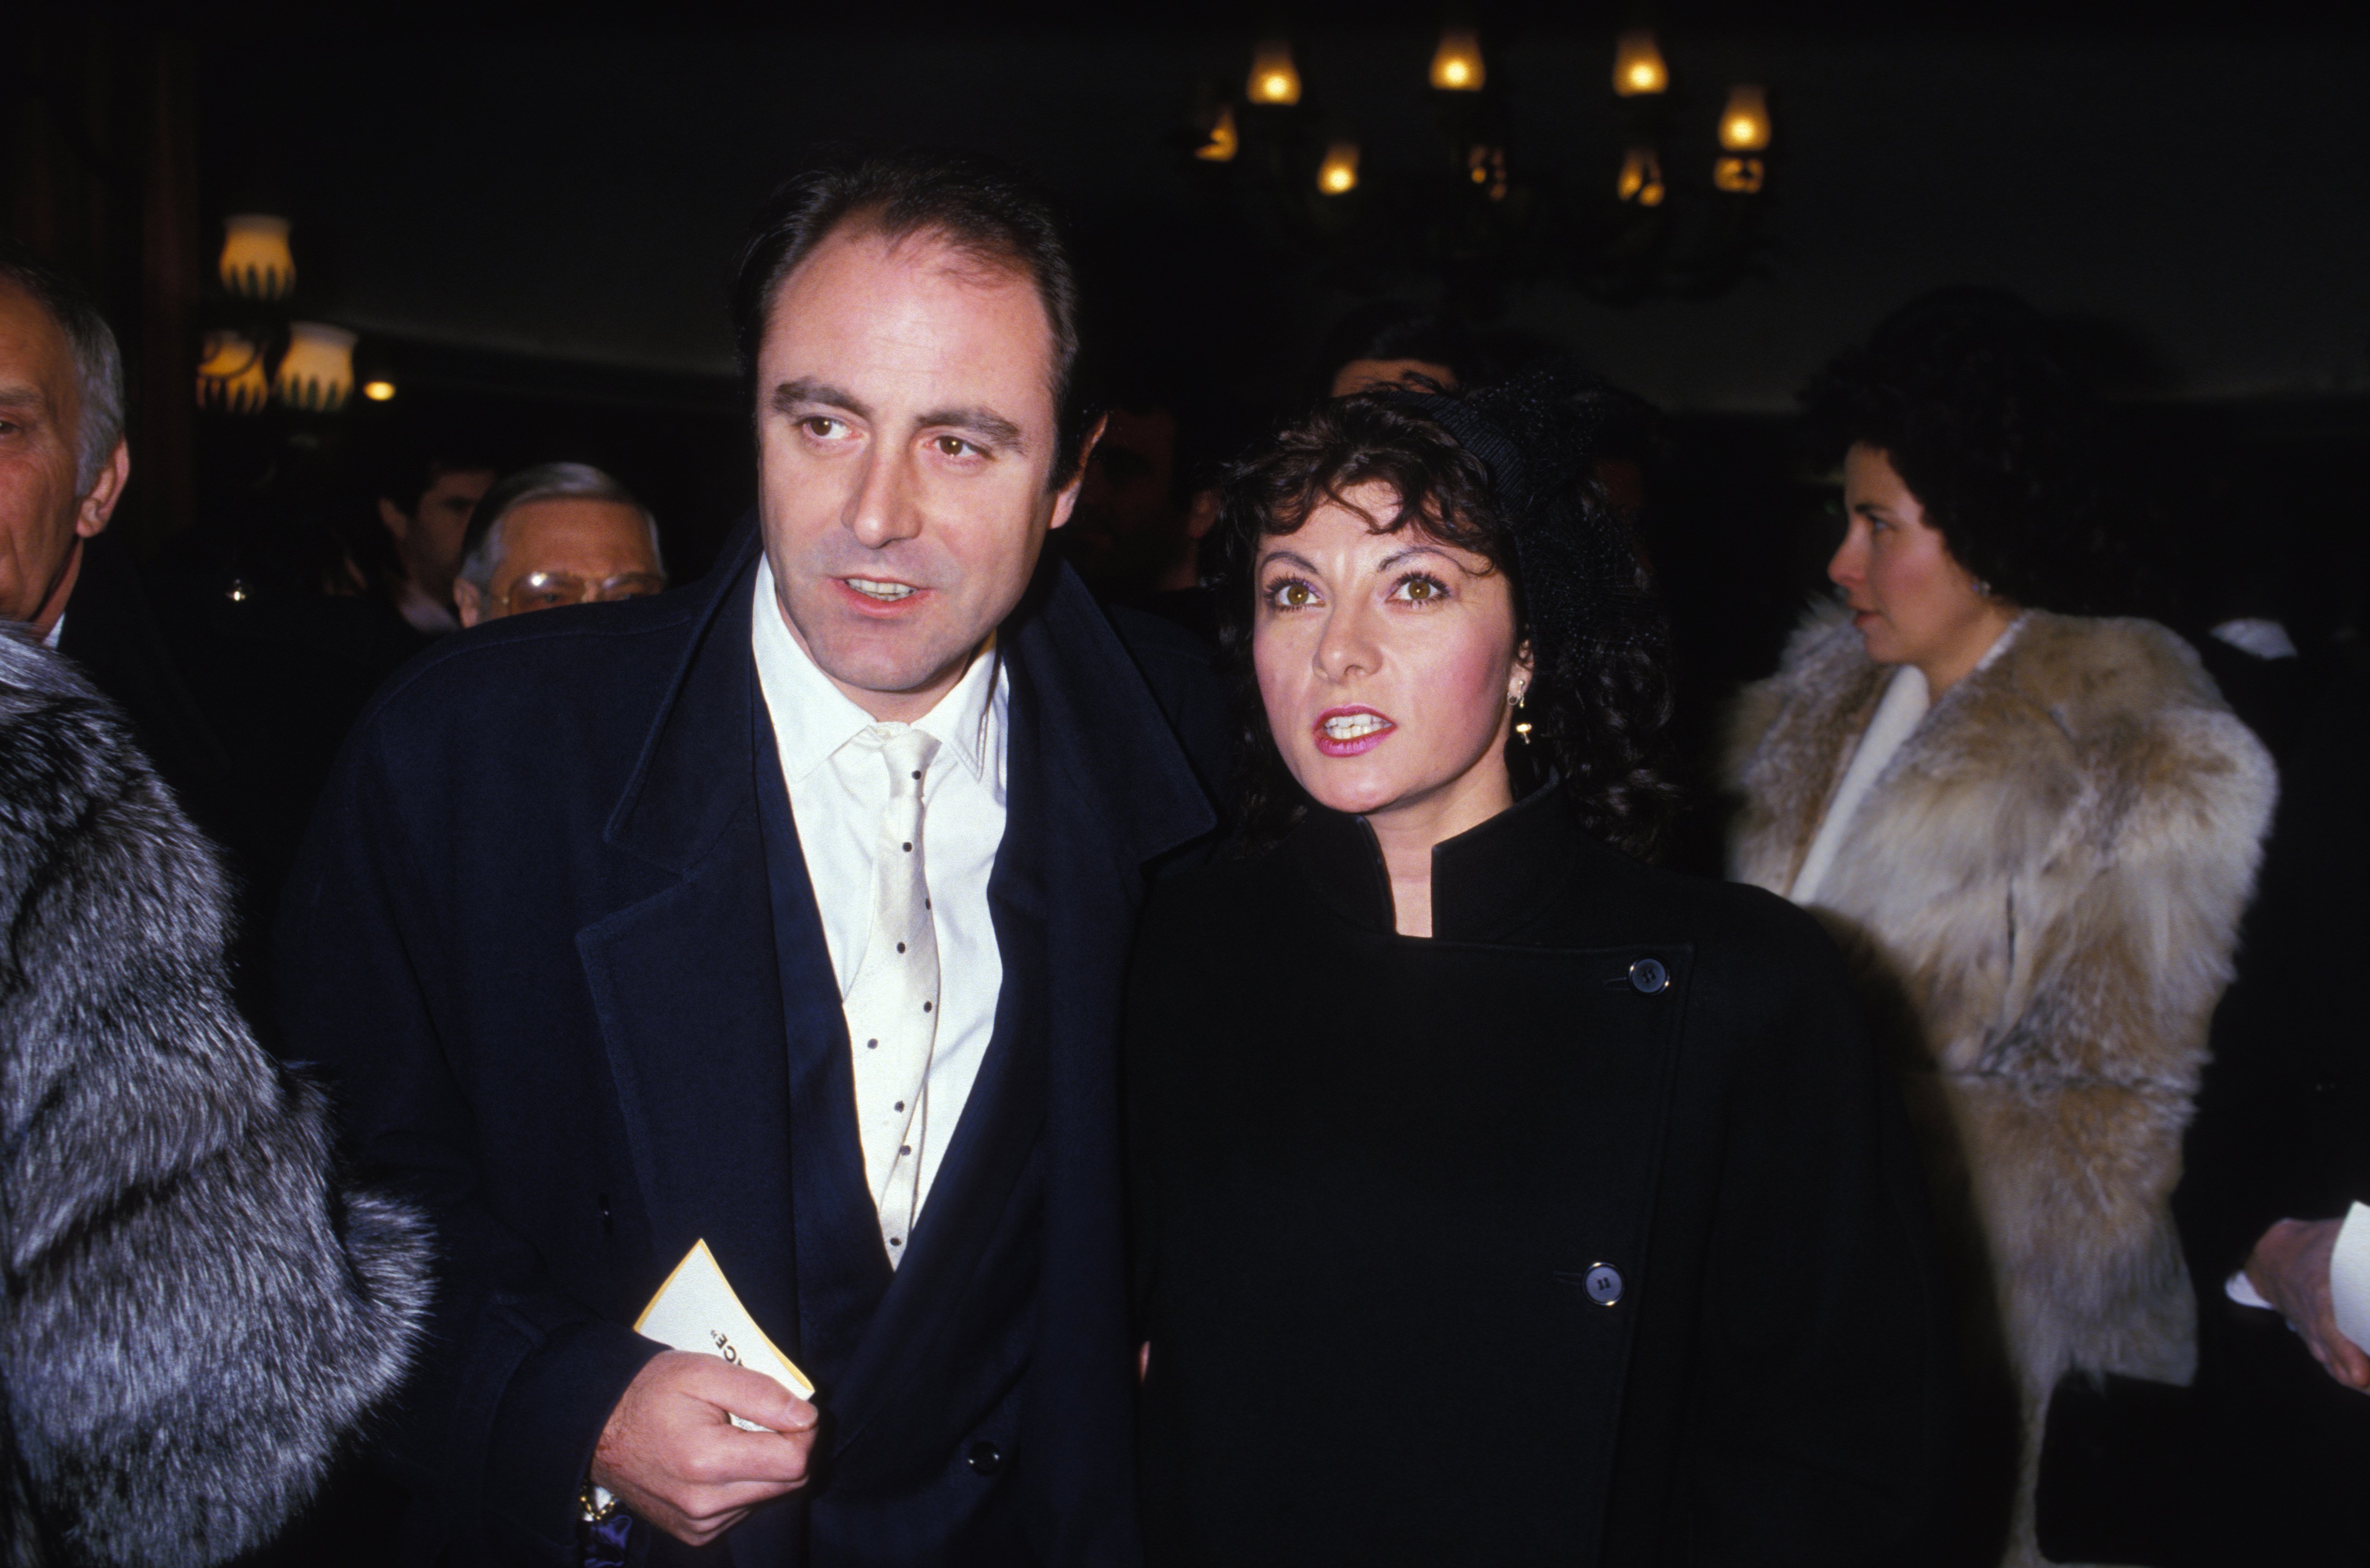 Le couple Delpech lors d’une soirée en 1986 | source : Getty Images